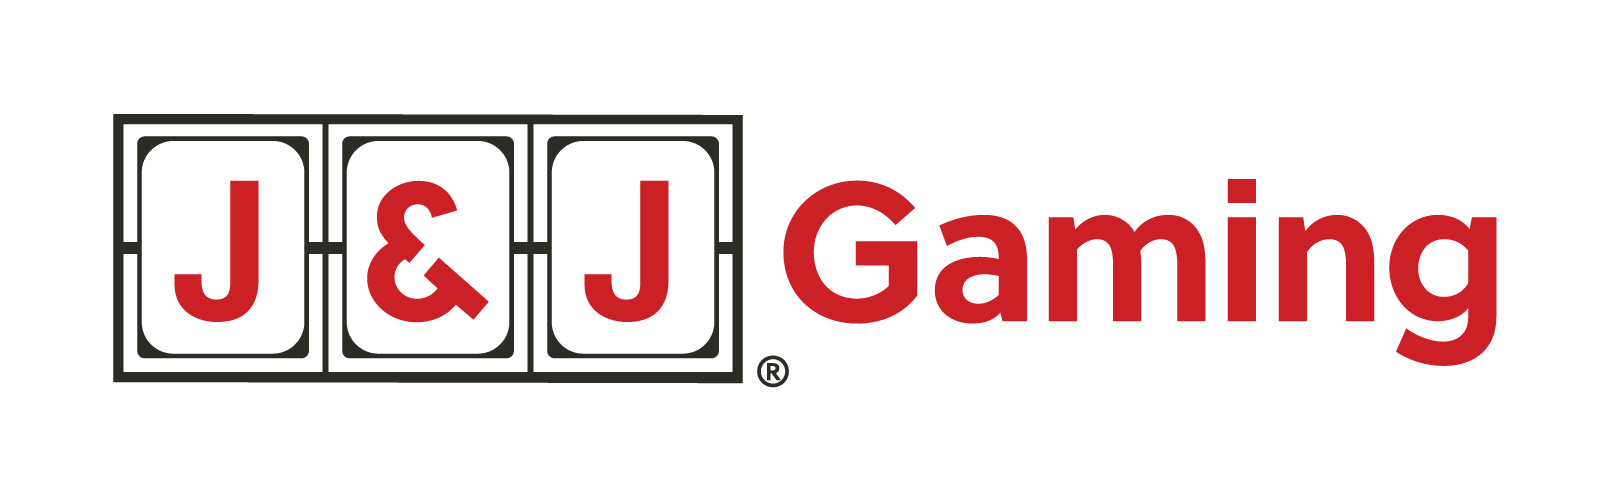 JJ Logo Gaming Horizontal rgb 01